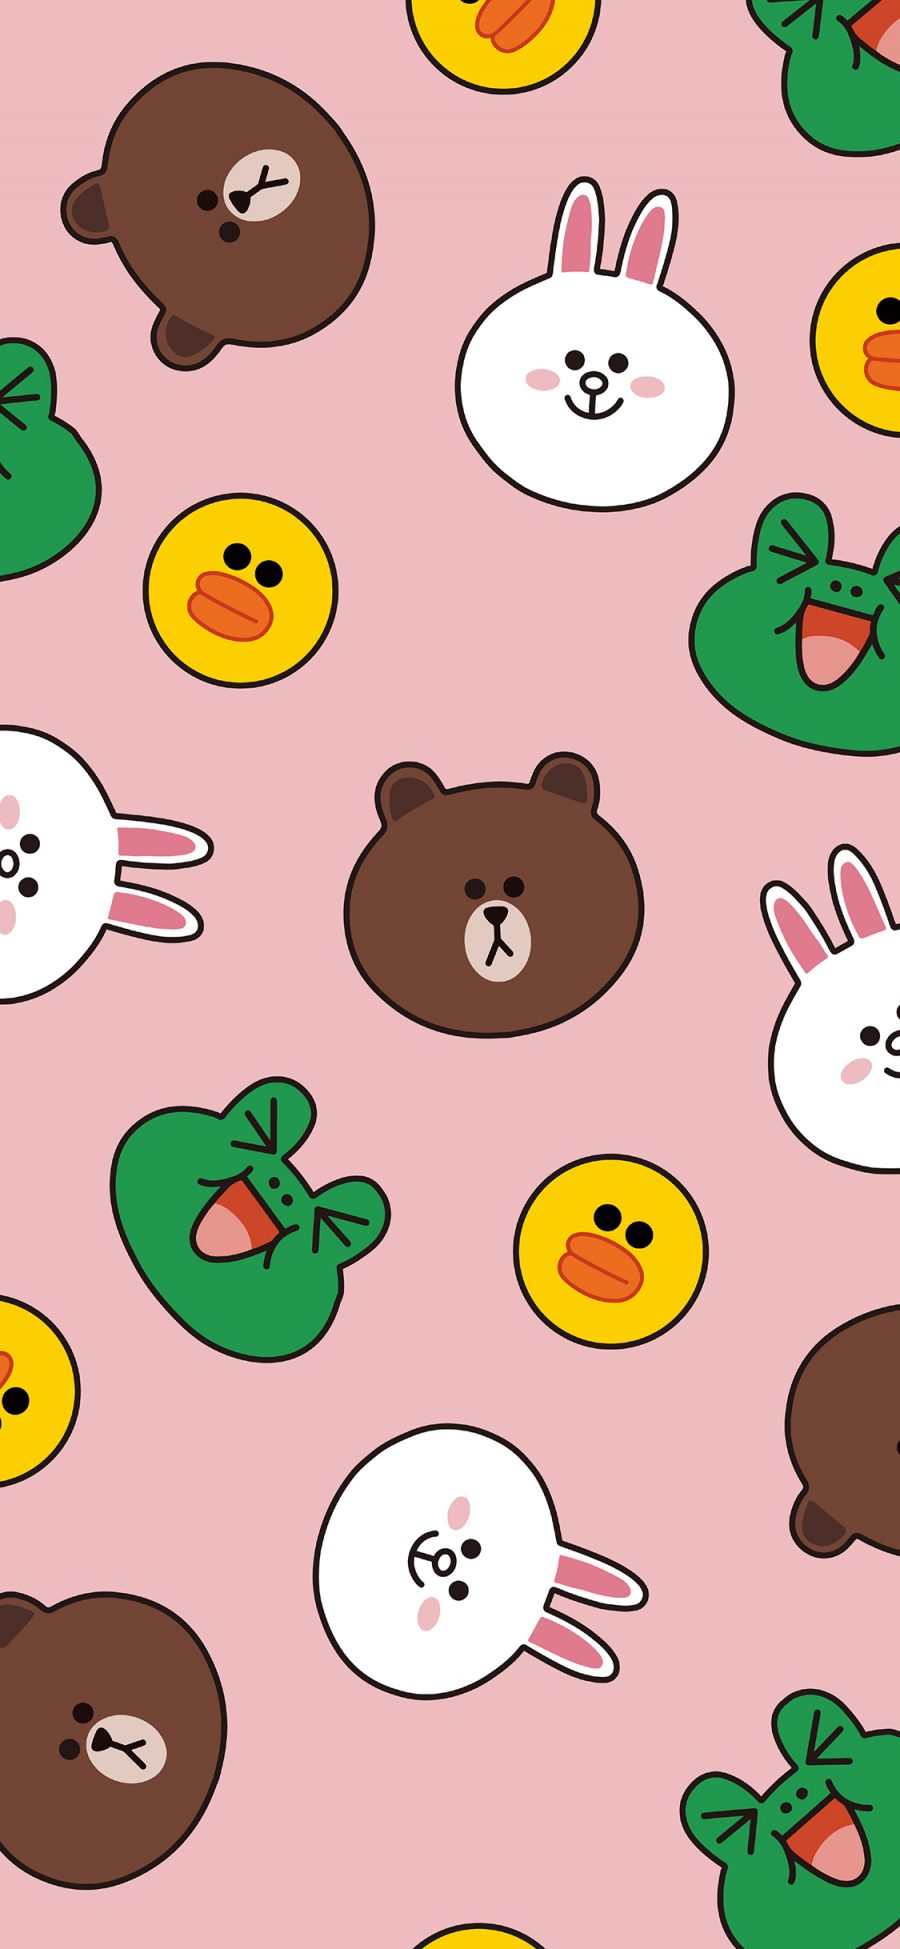 [2436×1125]line friends 布朗熊 可妮兔 萨莉鸡 青蛙 粉色 平铺 苹果手机动漫壁纸图片